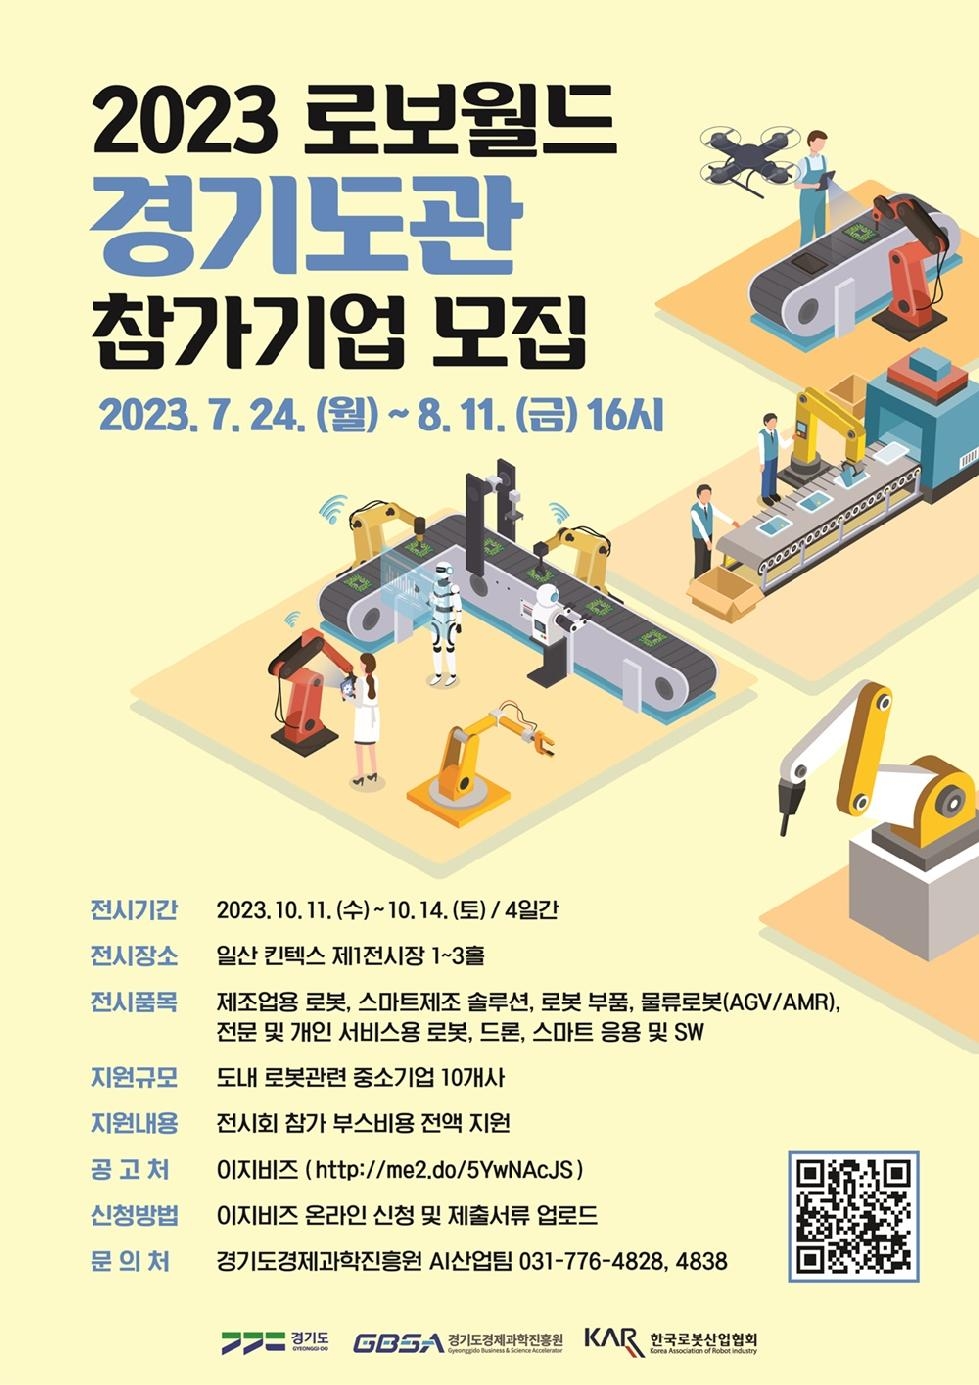 경기도, 국내 최대규모 로봇전시회 ‘2023 로보월드’ 경기도관 참가기업